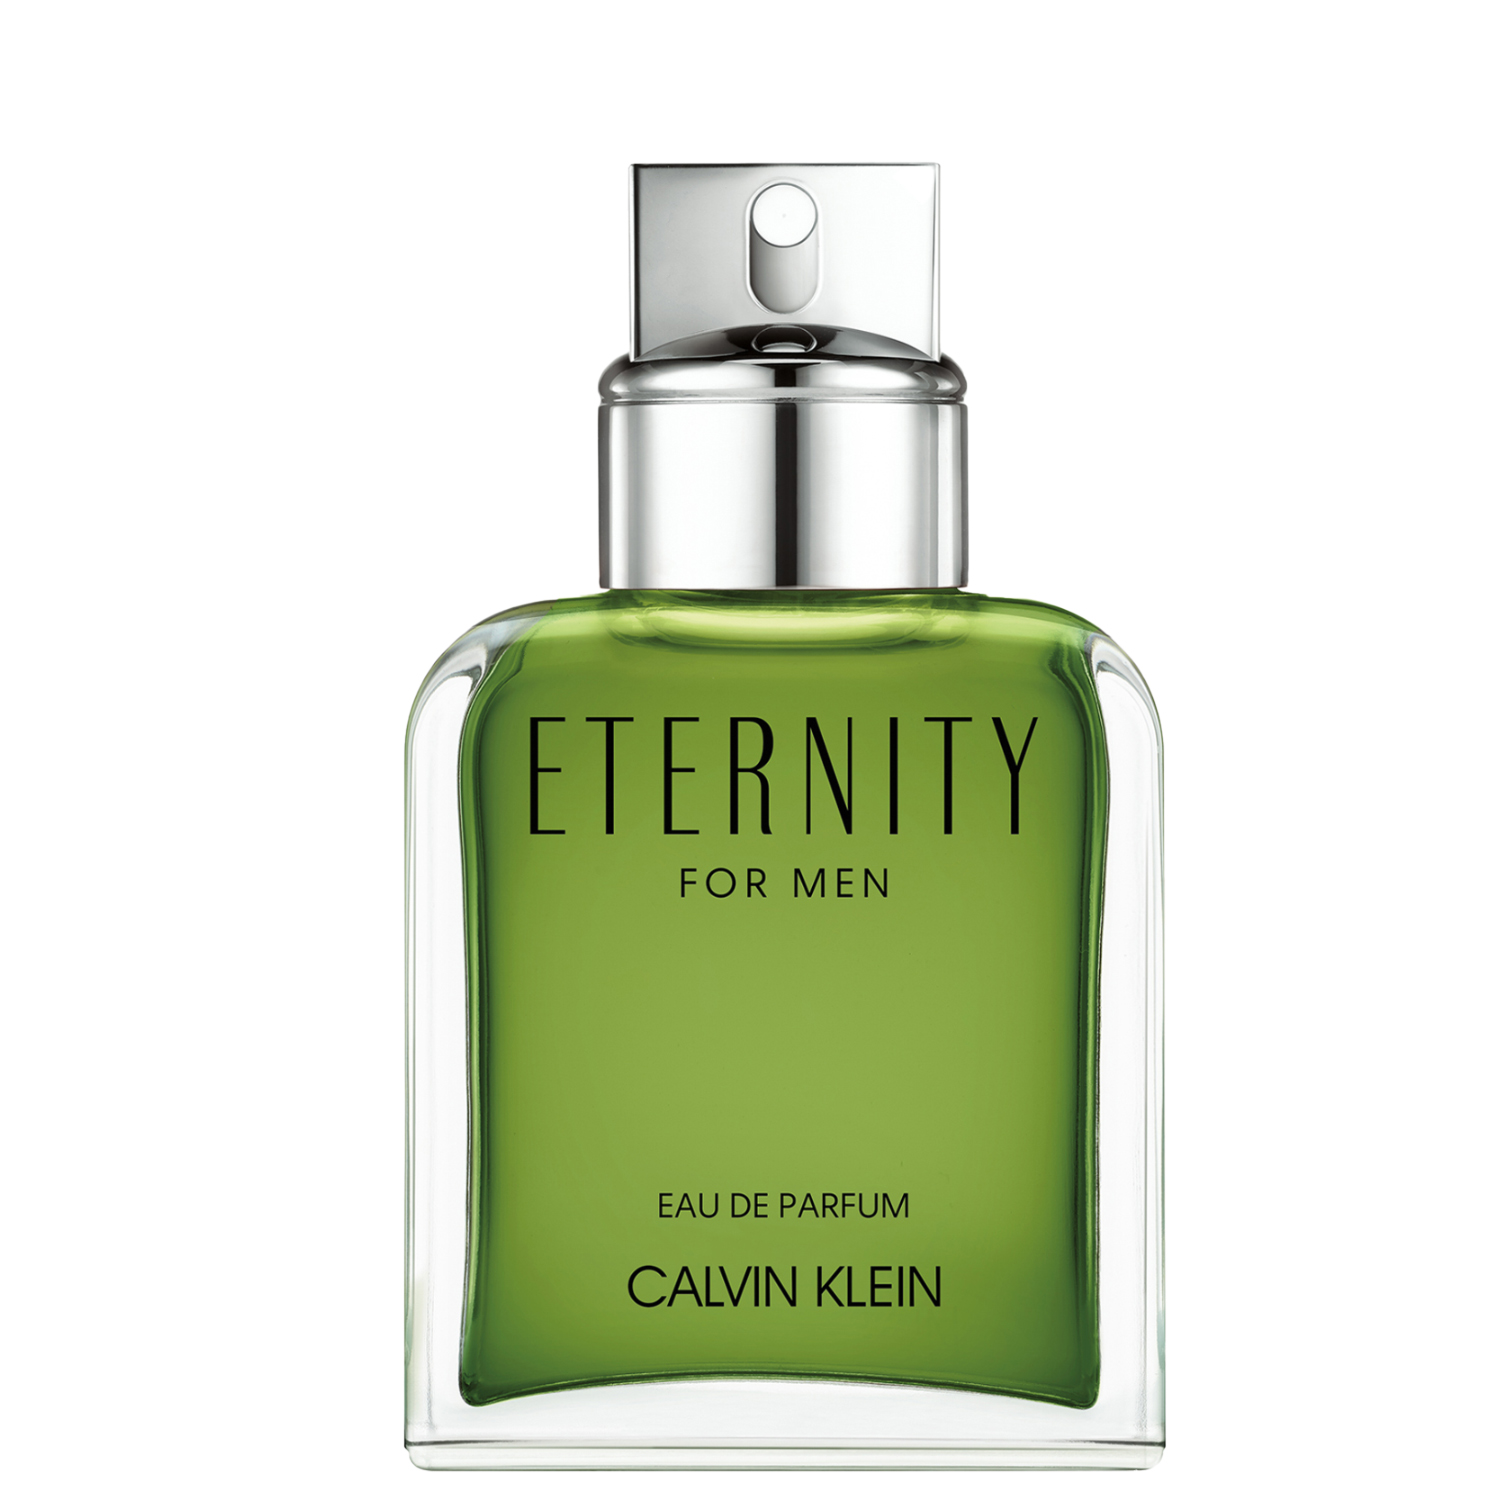 Calvin Klein Eternity for Men Eau de Parfum 50ml